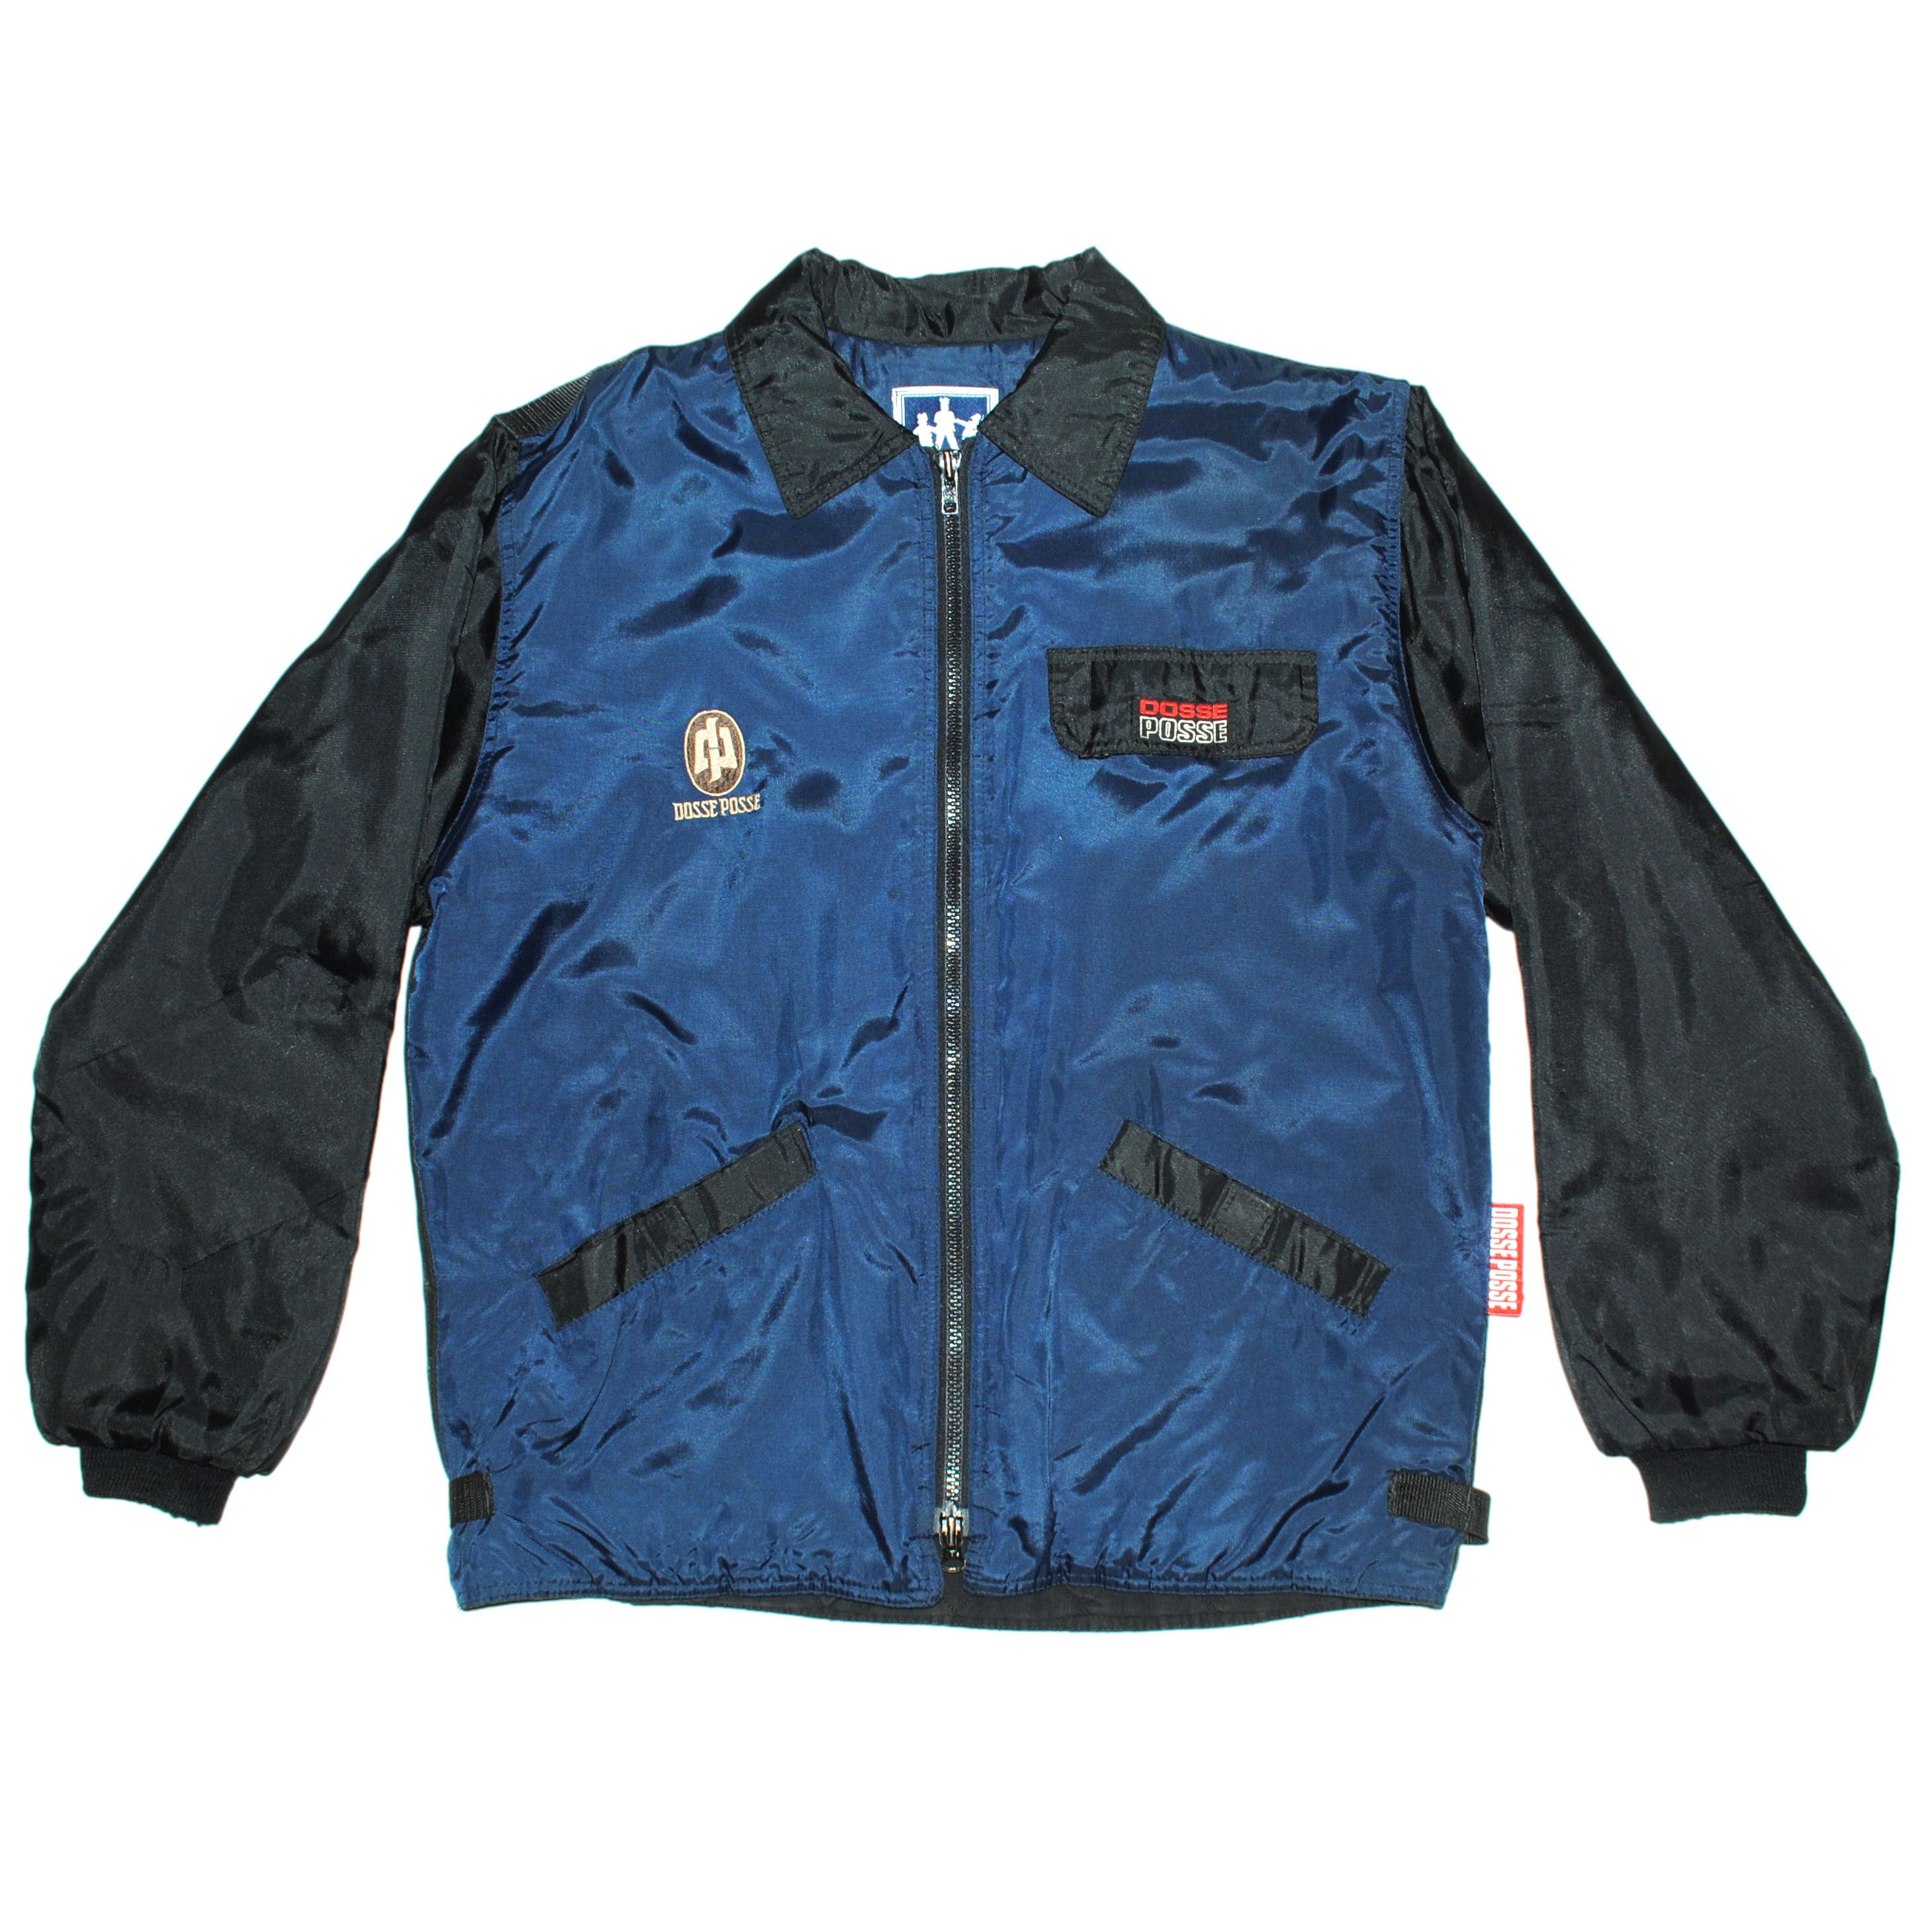 90' vintage jacket